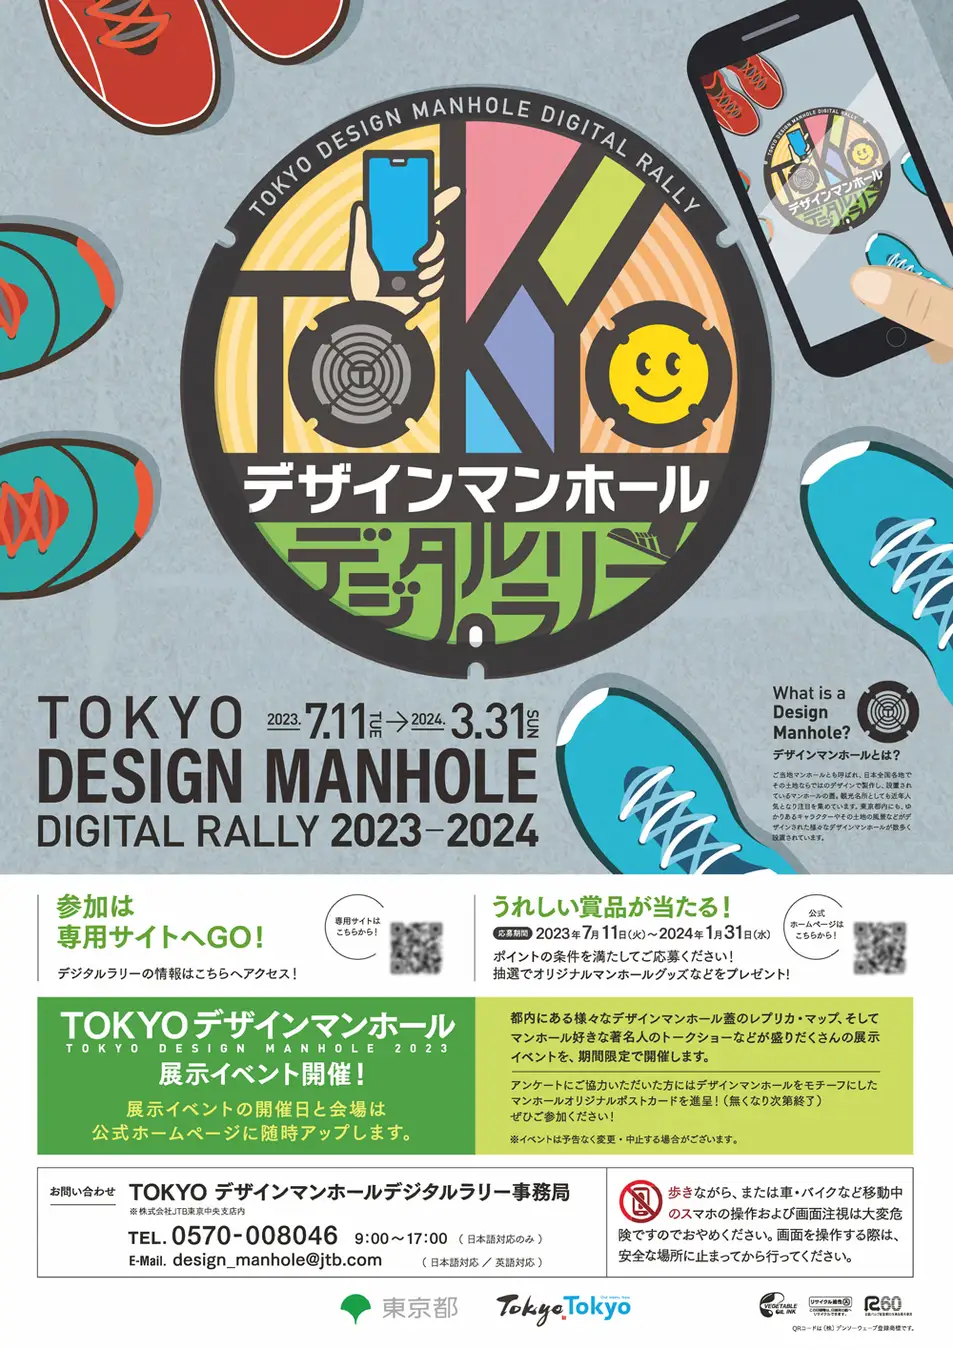 「TOKYOデザインマンホールデジタルラリー」に当社システムが採用